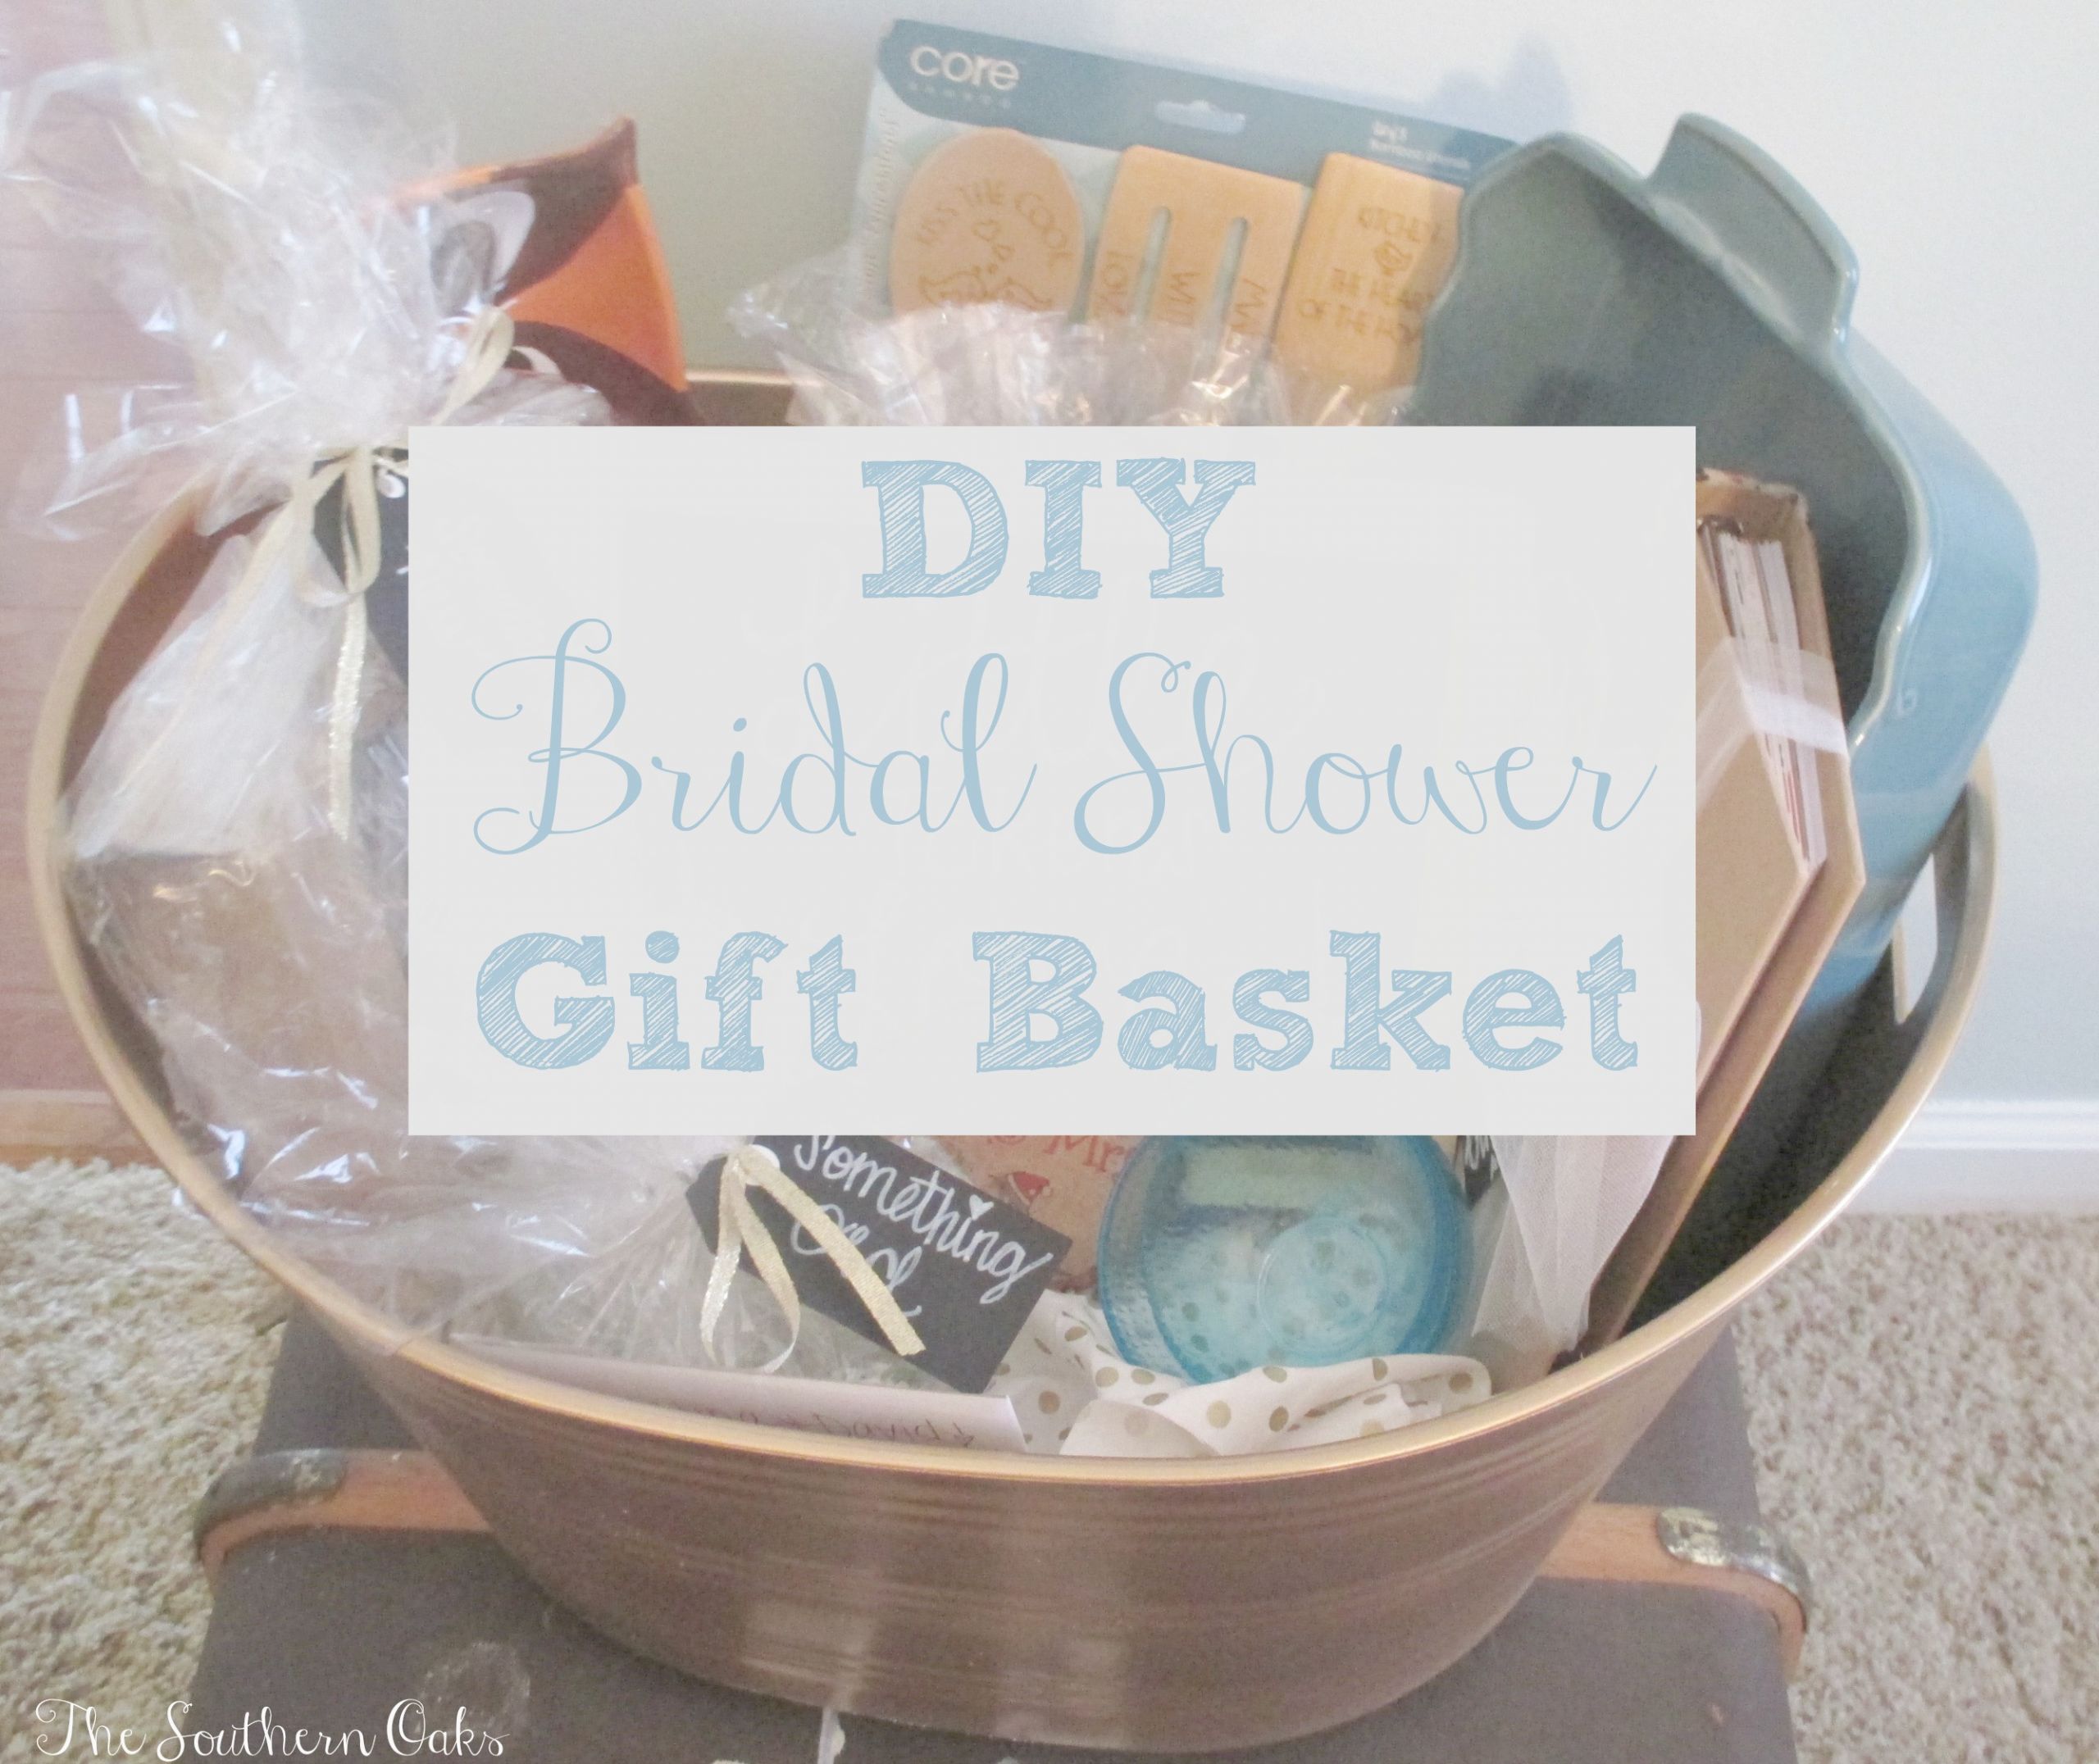 DIY Bridal Shower Gifts
 DIY Bridal Shower Gift Basket Sweet Southern Oaks